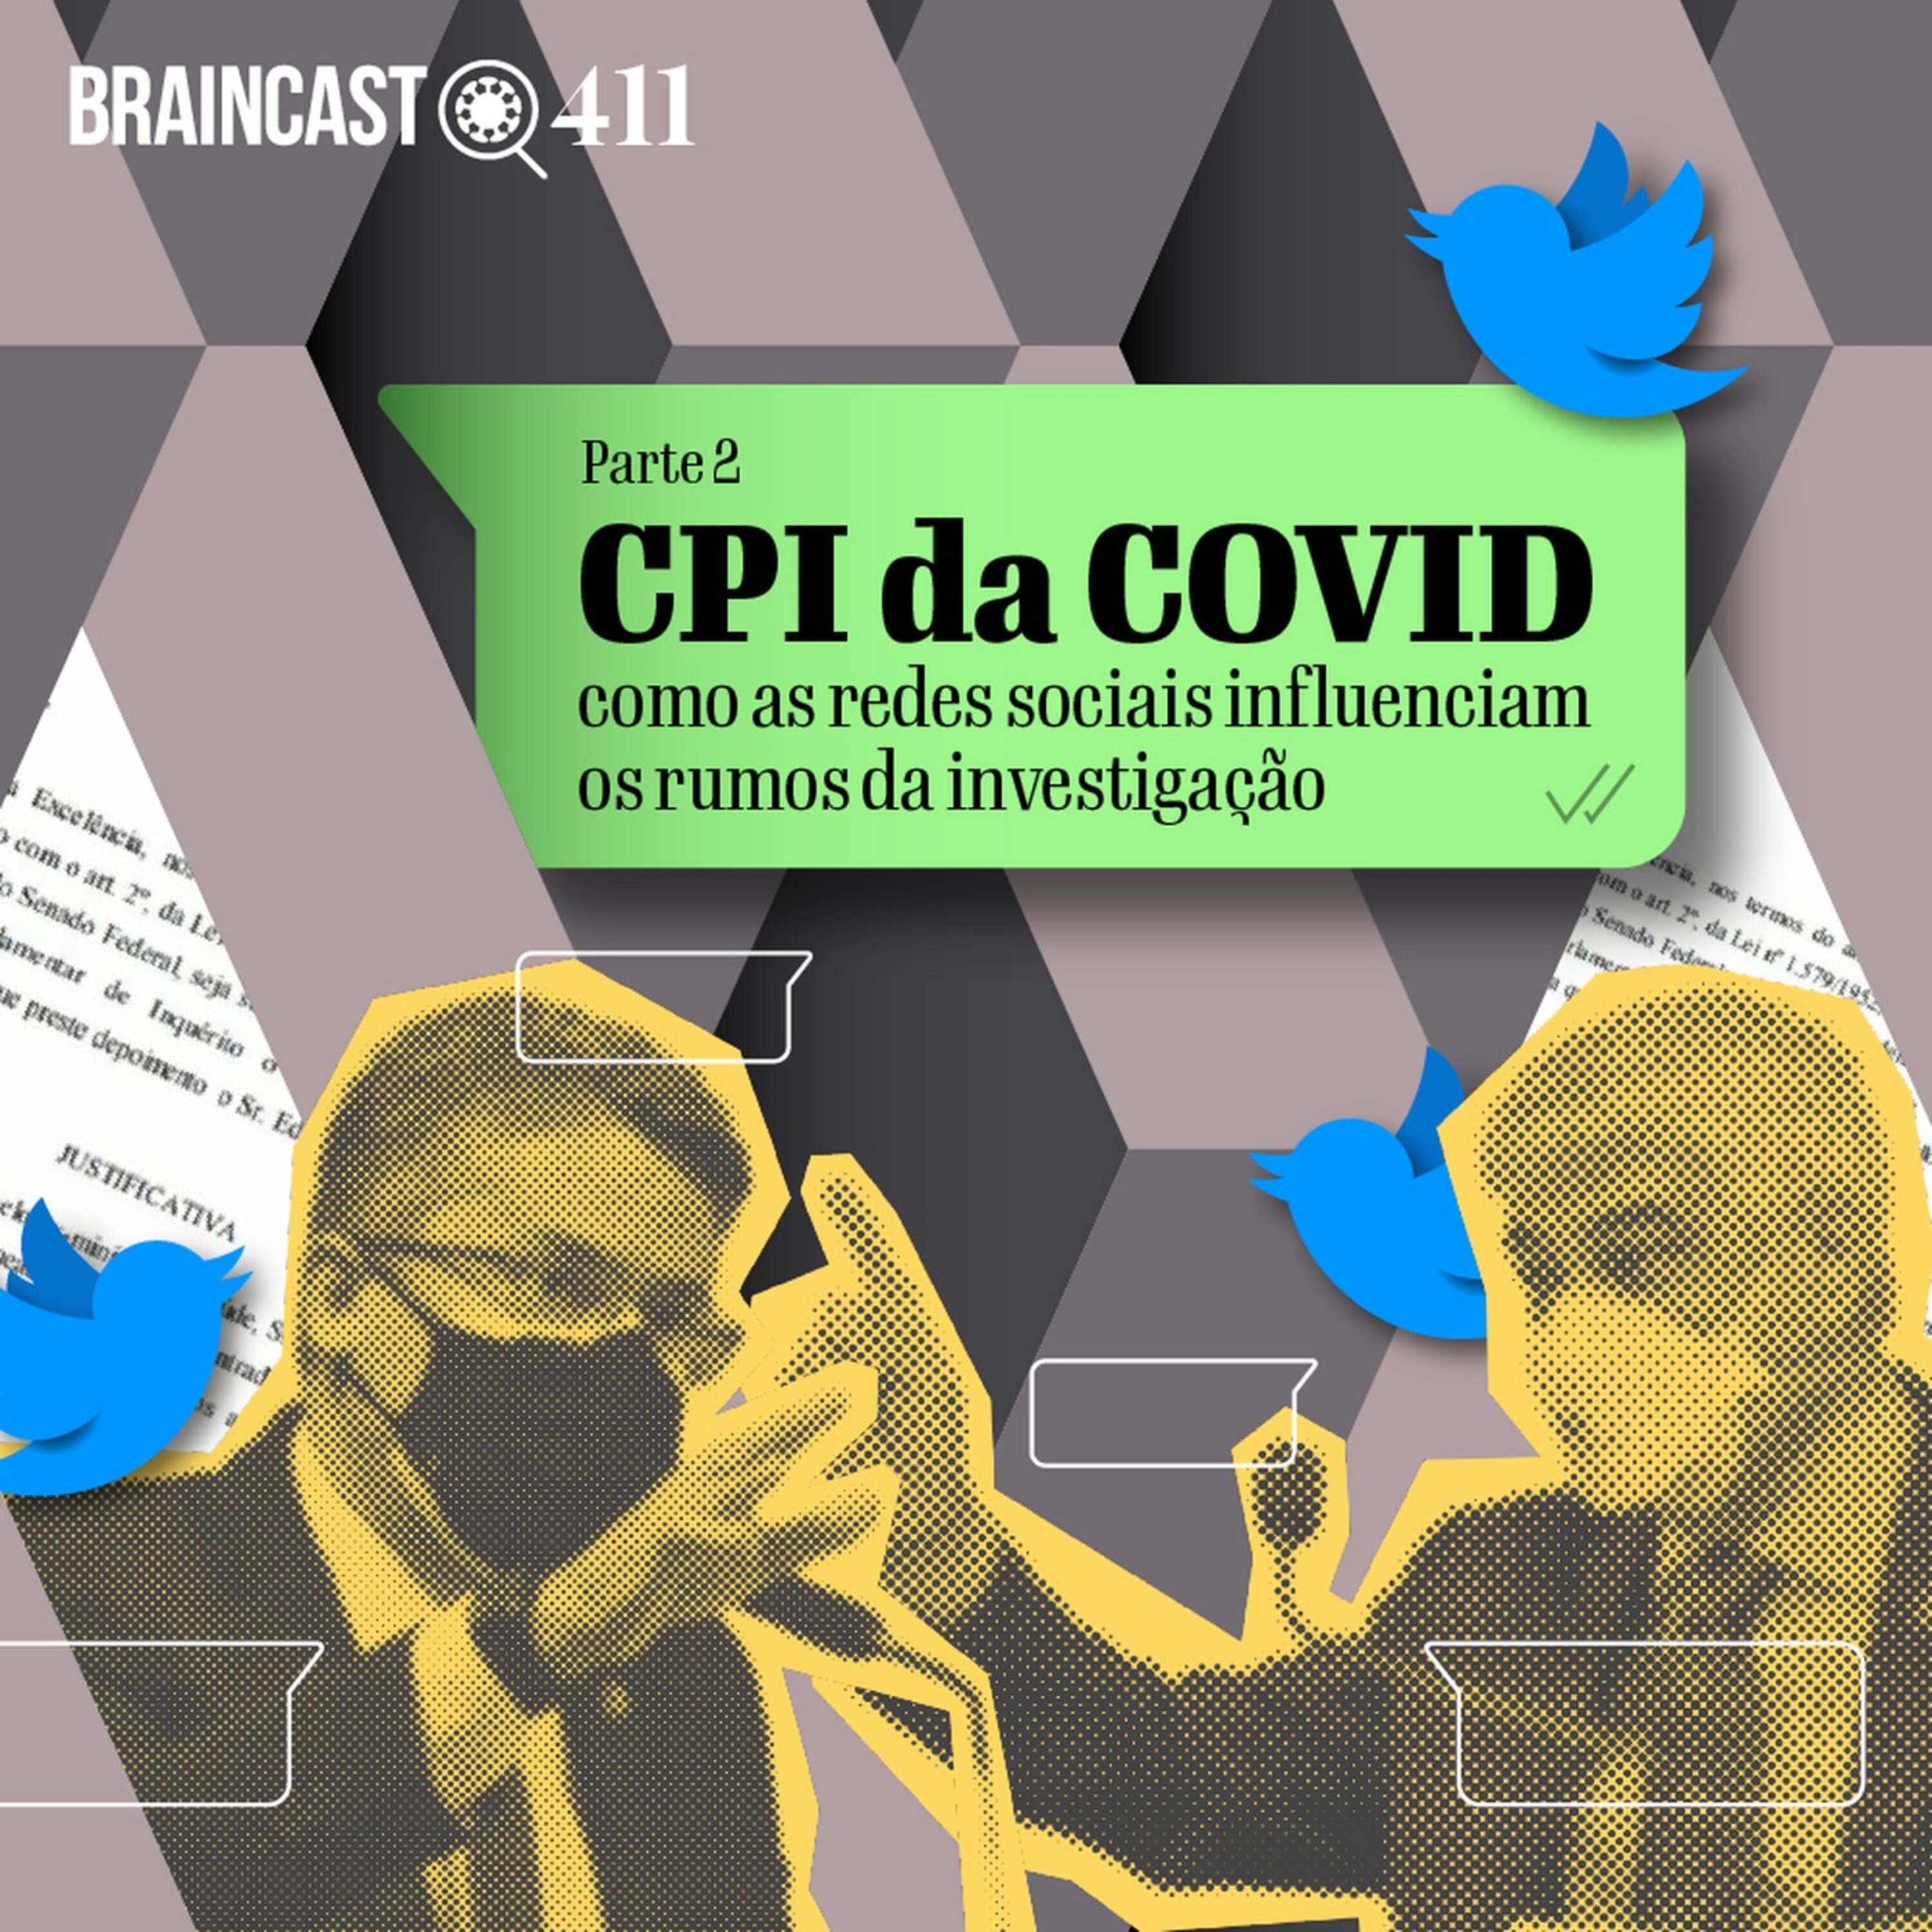 CPI da COVID: como as redes sociais influenciam a investigação [Parte 2]